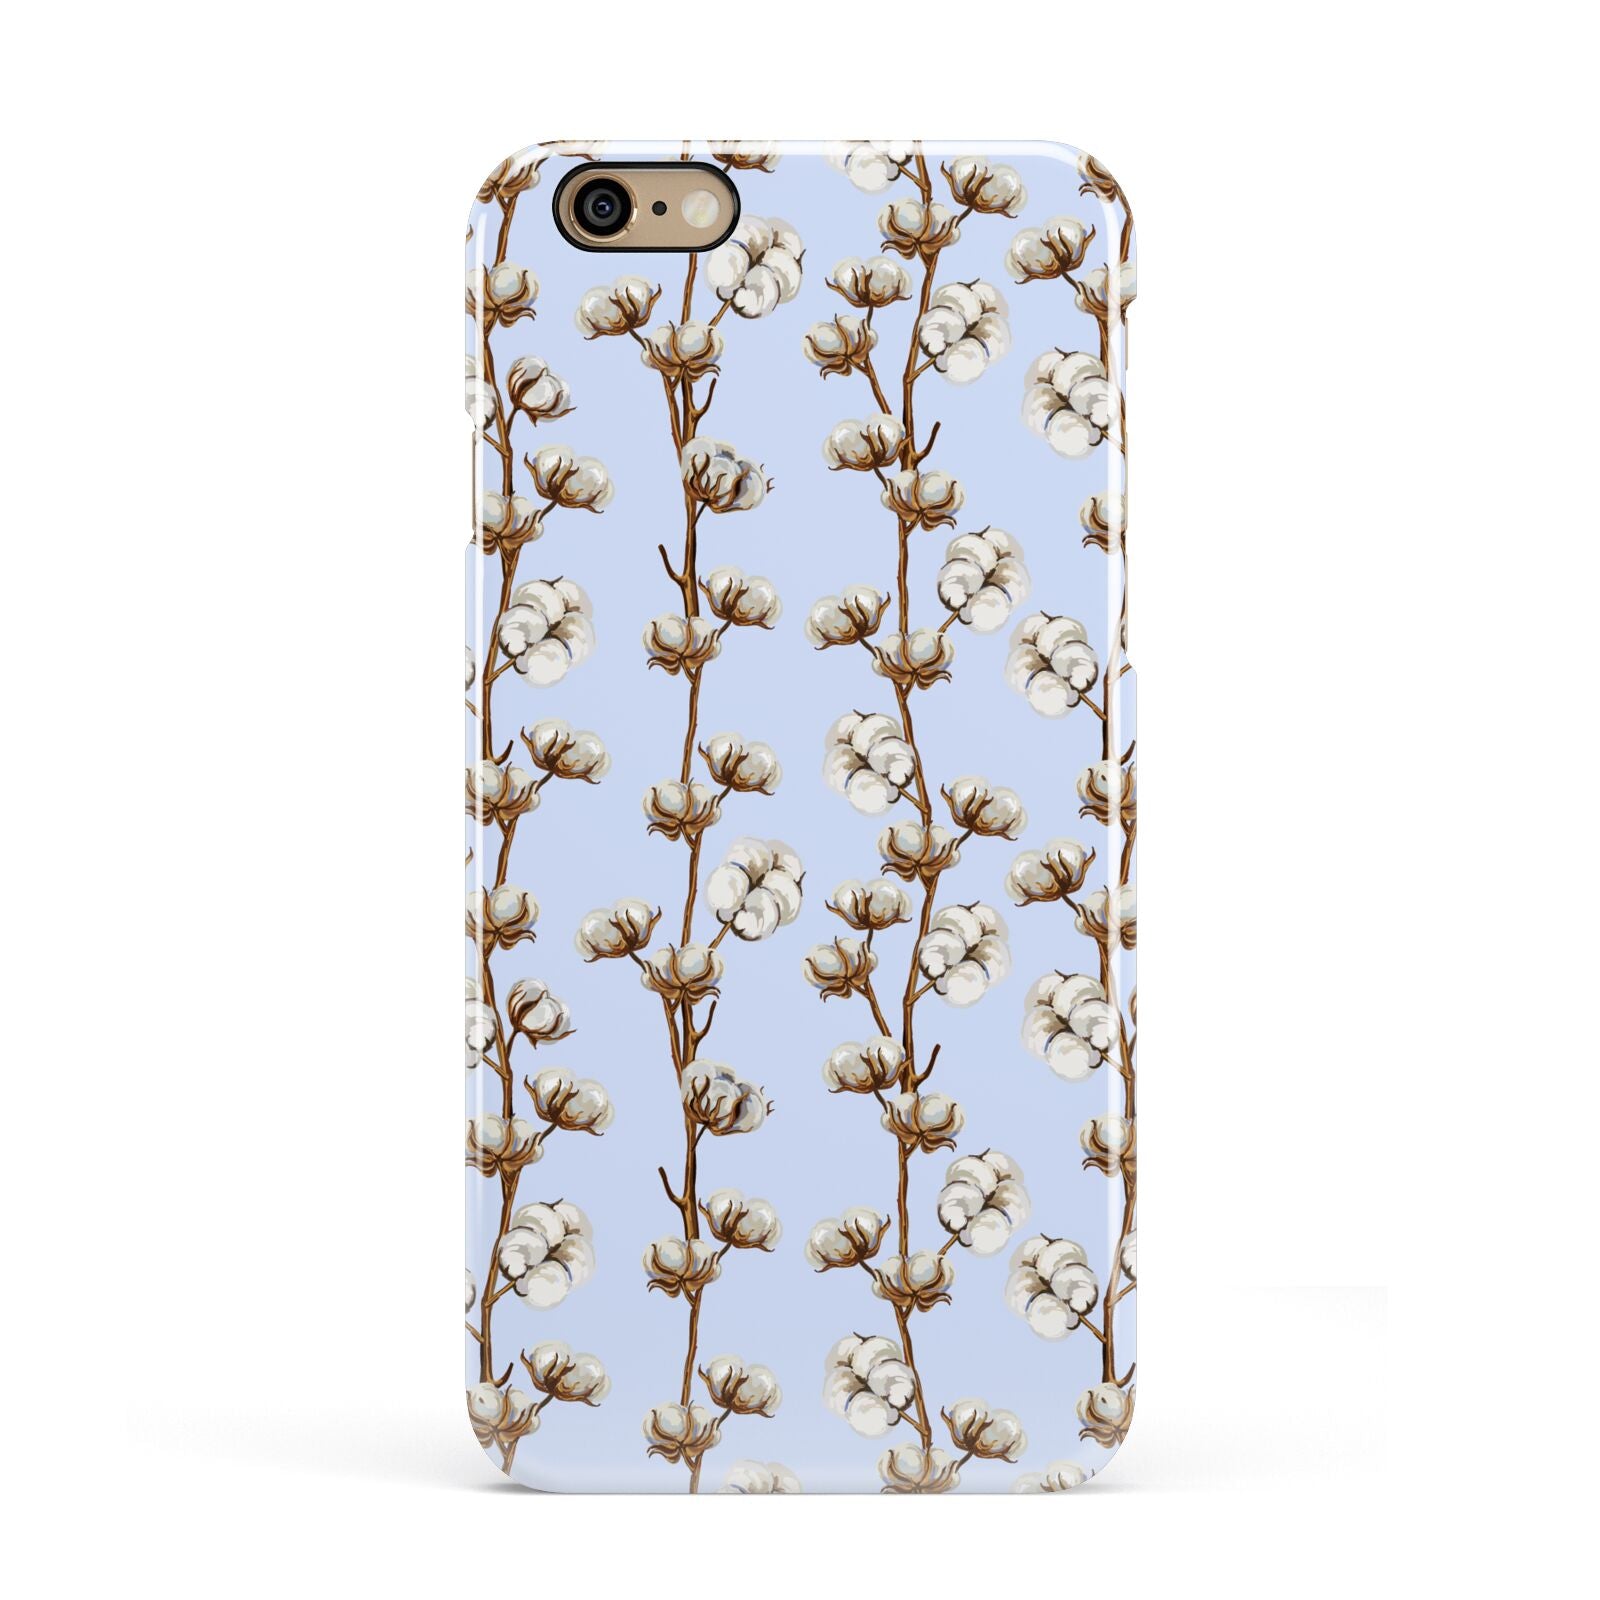 Cotton Branch Apple iPhone 6 3D Snap Case